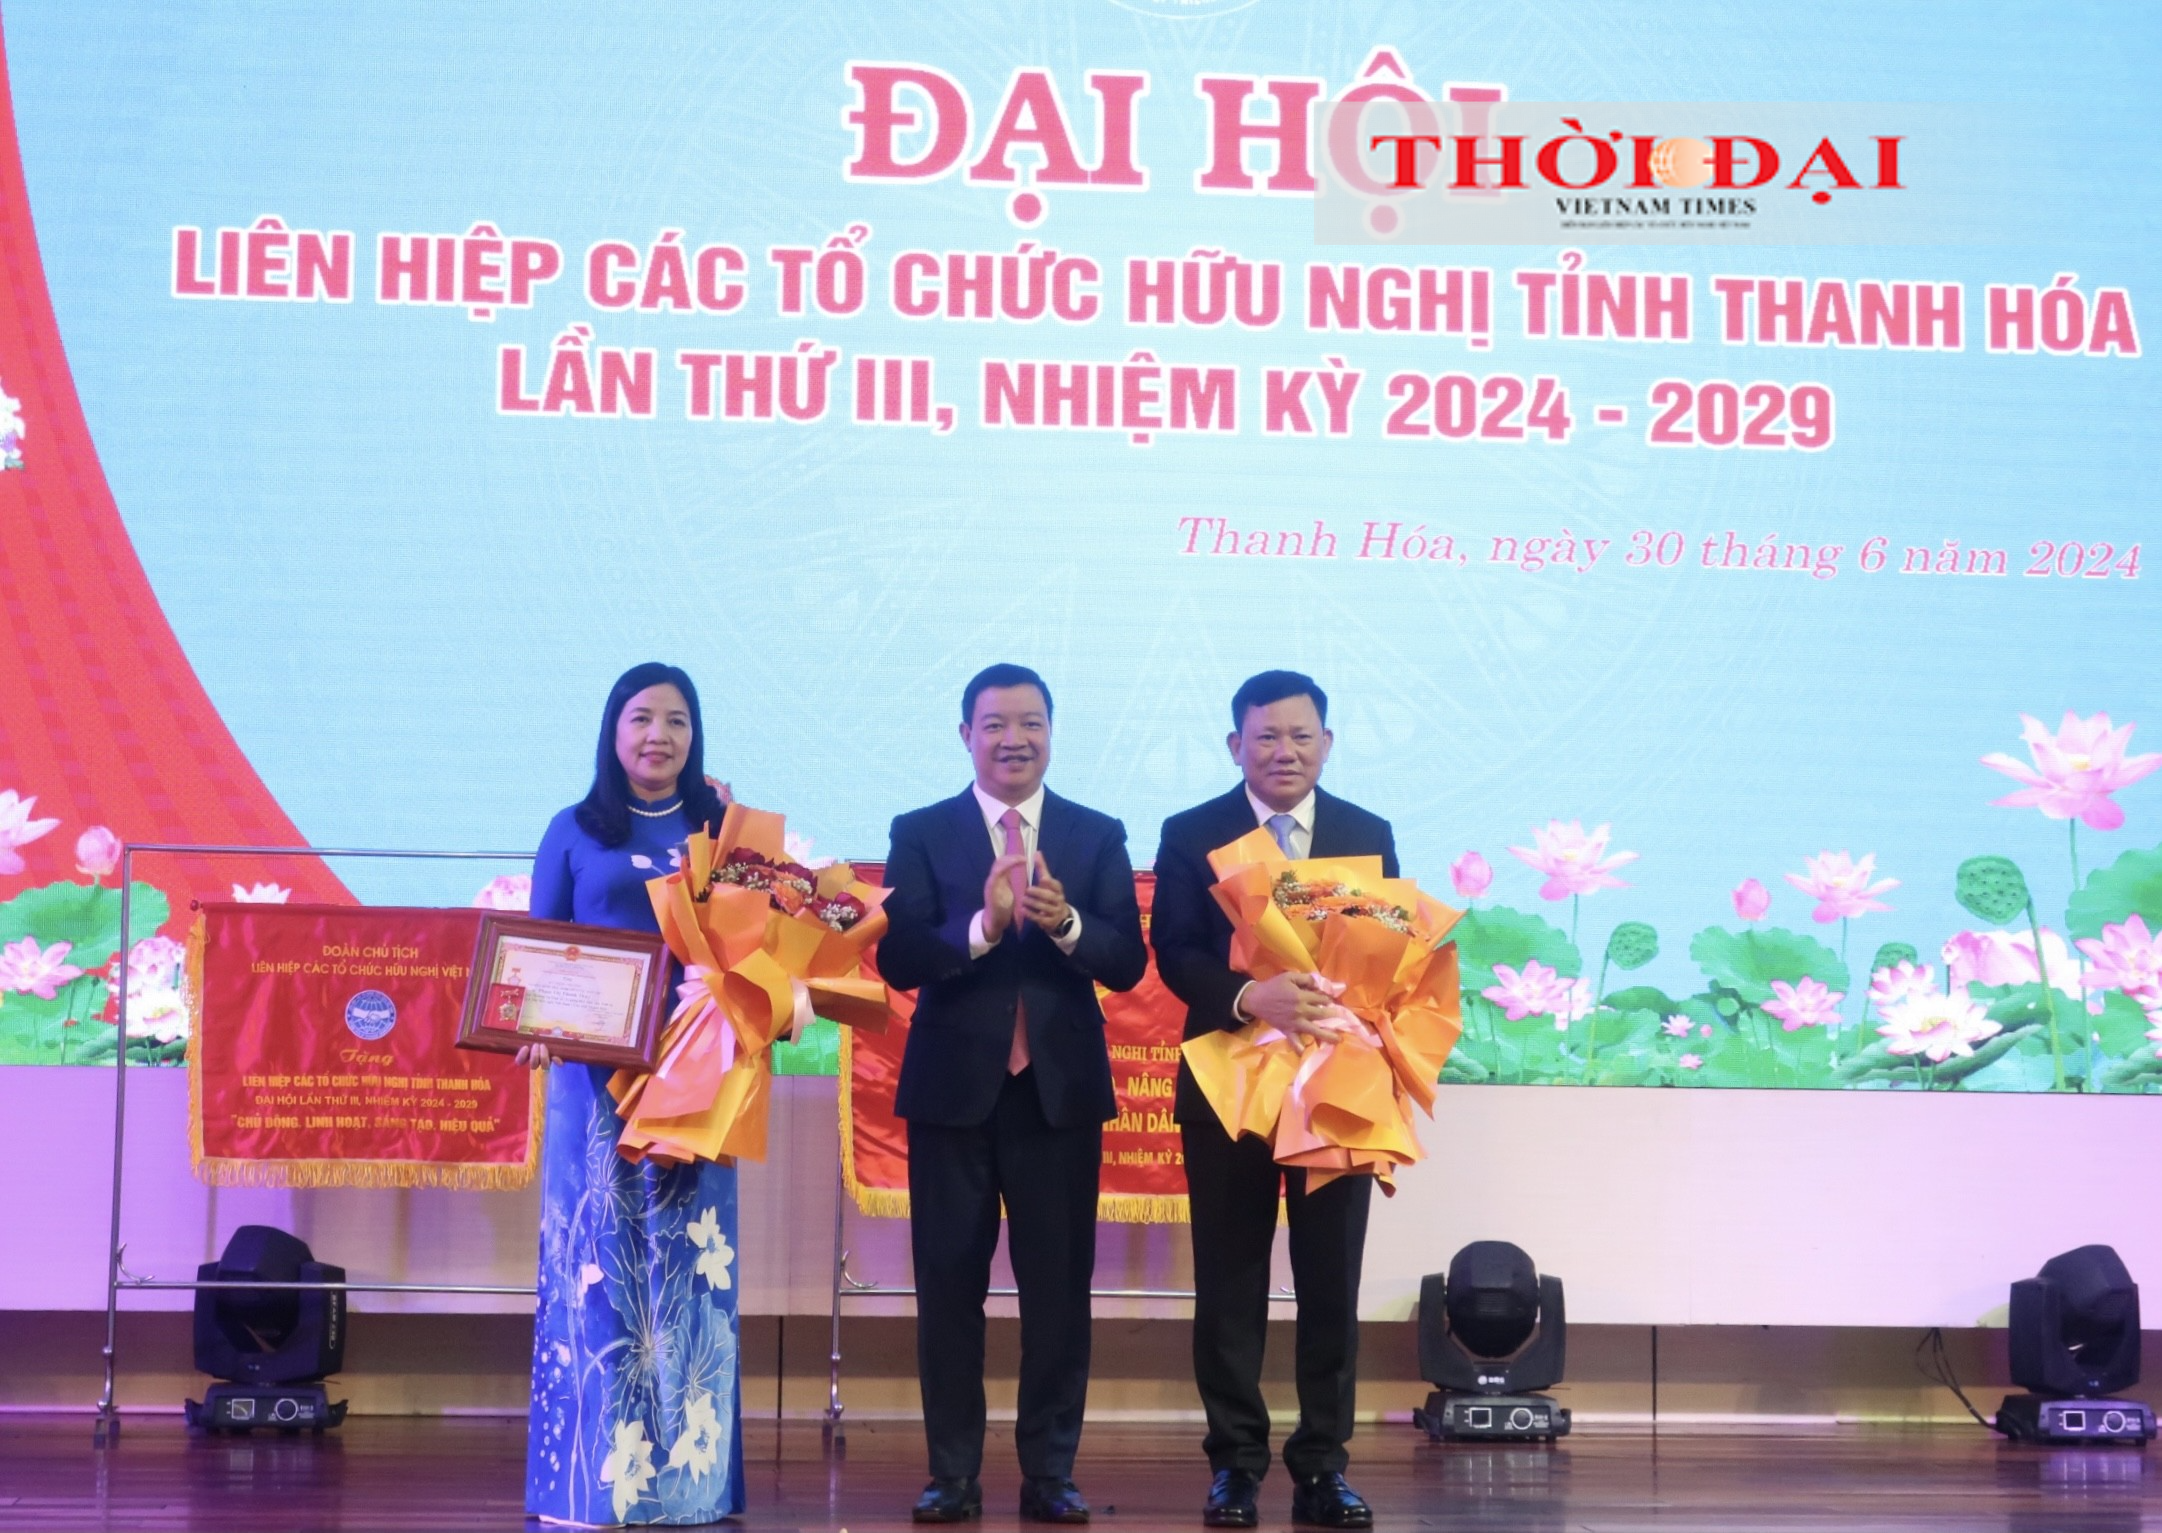 Ông Nguyễn Ngọc Hùng (ở giữa), Phó Chủ tịch Liên hiệp các tổ chức hữu nghị Việt Nam trao tặng Kỷ niệm chương “Vì hòa bình, hữu nghị giữa các dân tộc” cho 2 cá nhân.